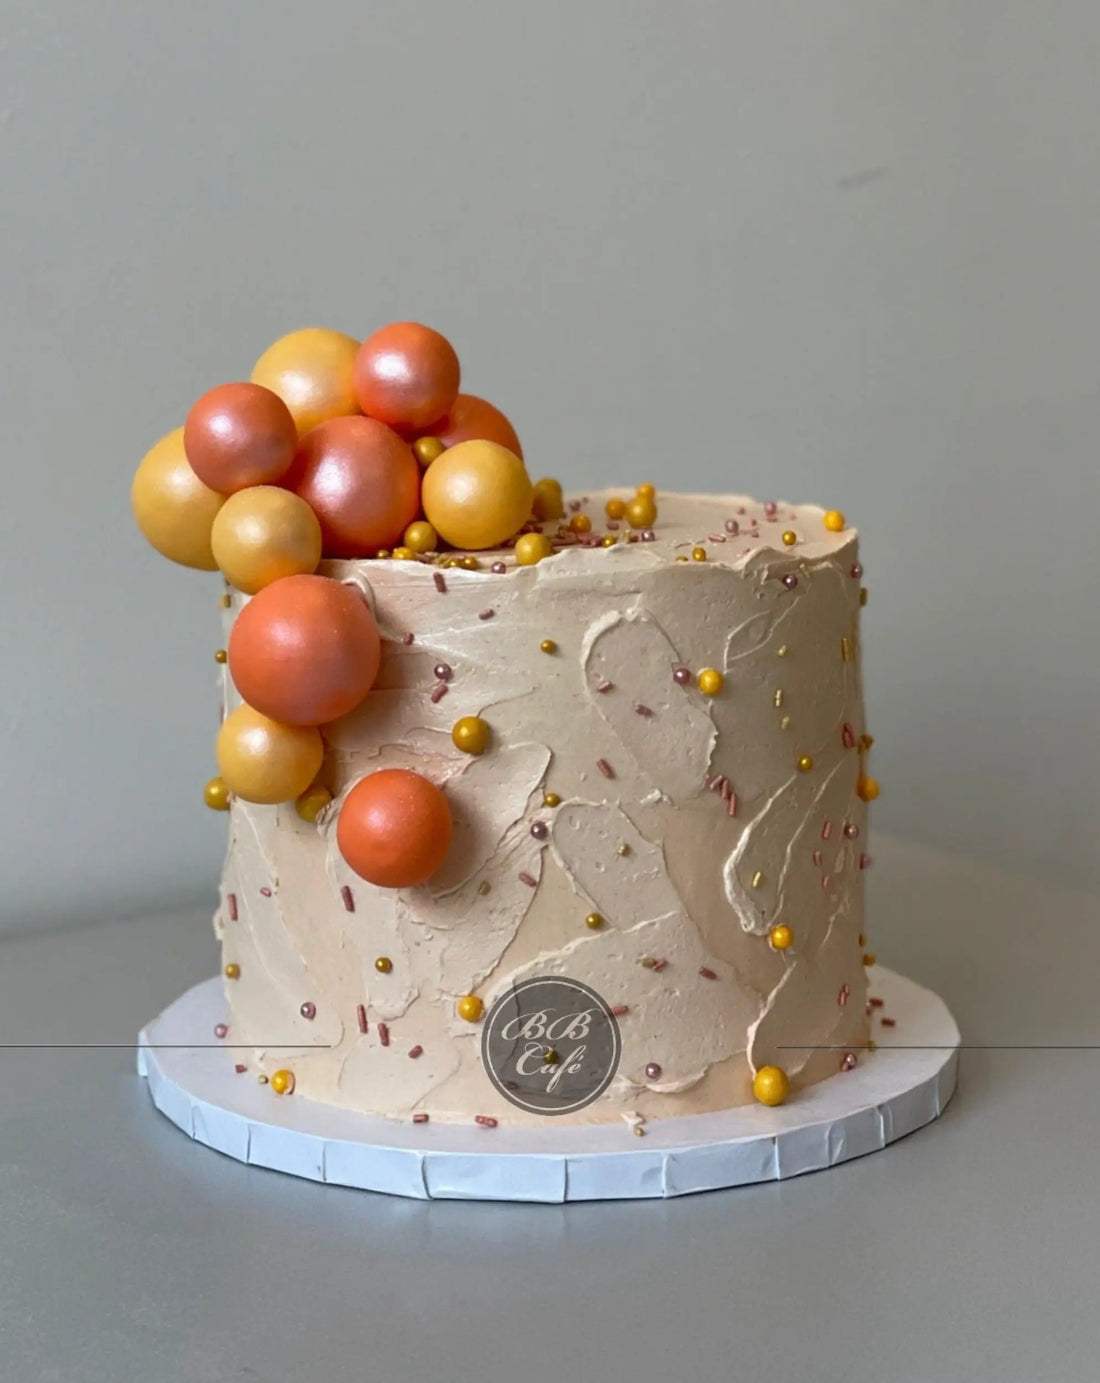 Splashed &amp; textured spheres on buttercream - custom cake